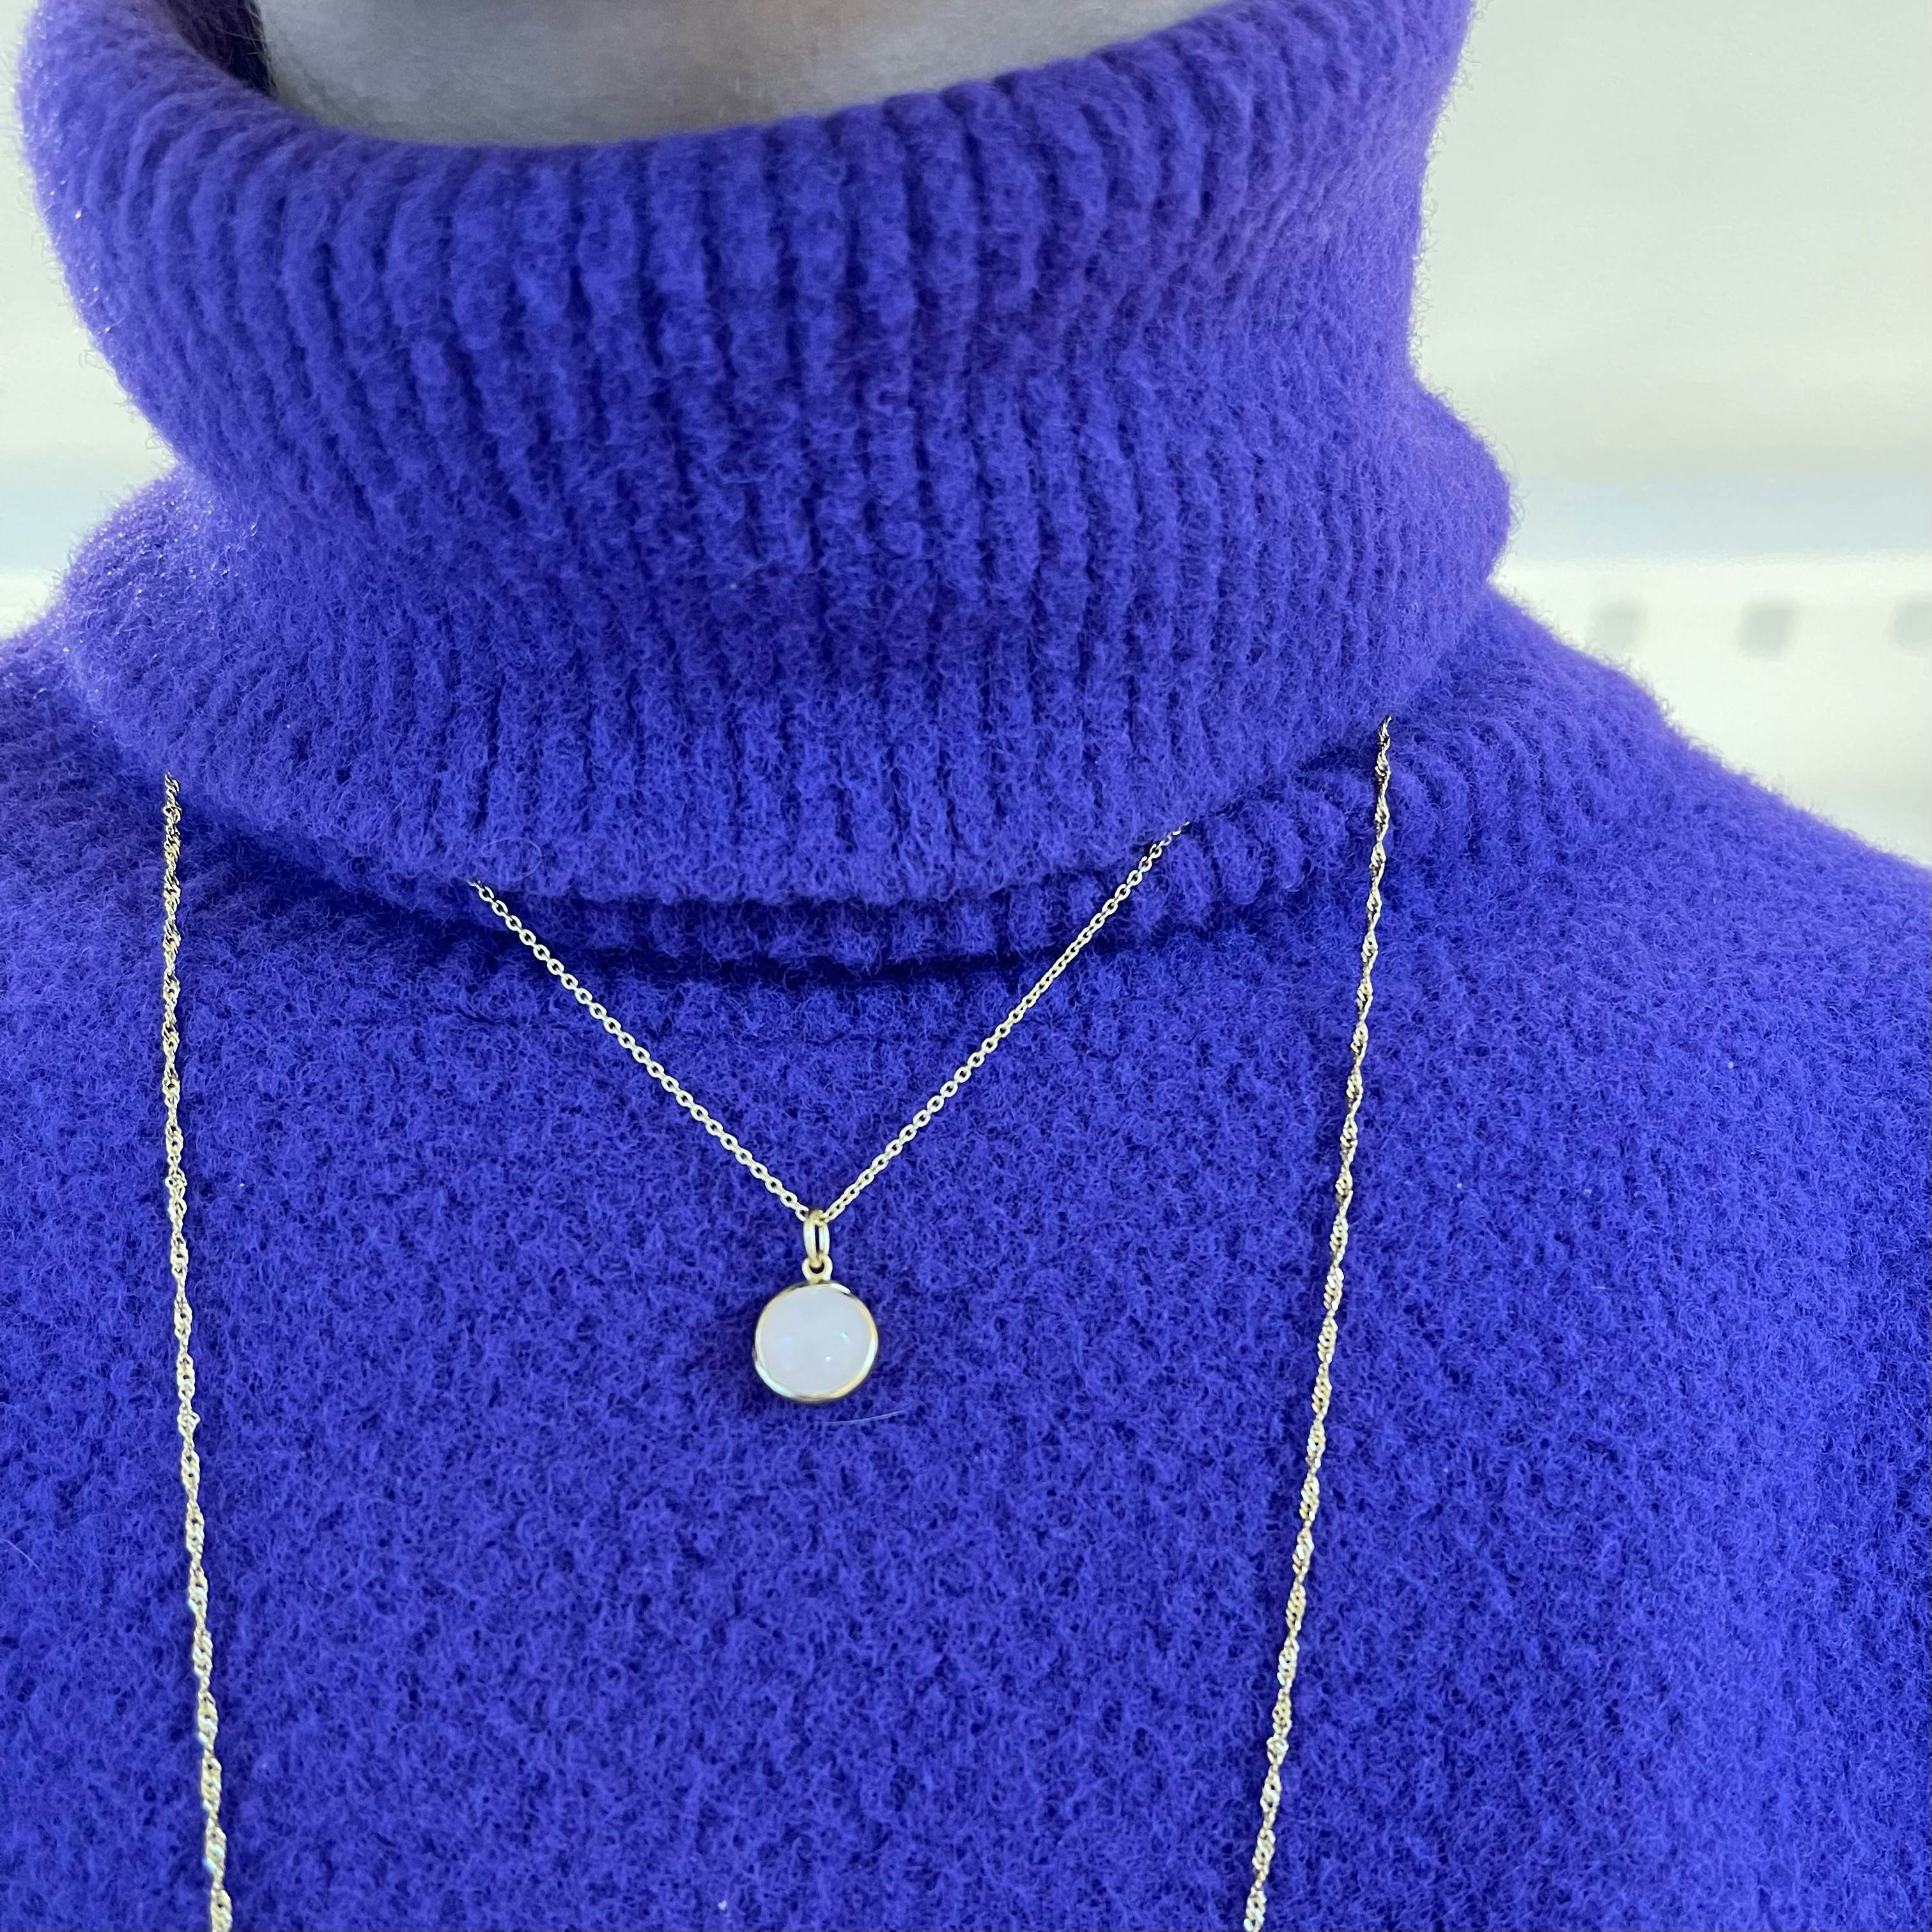 Aura Rose necklace fra Pernille Corydon i Forgylt-Sølv Sterling 925| Matt,Blank